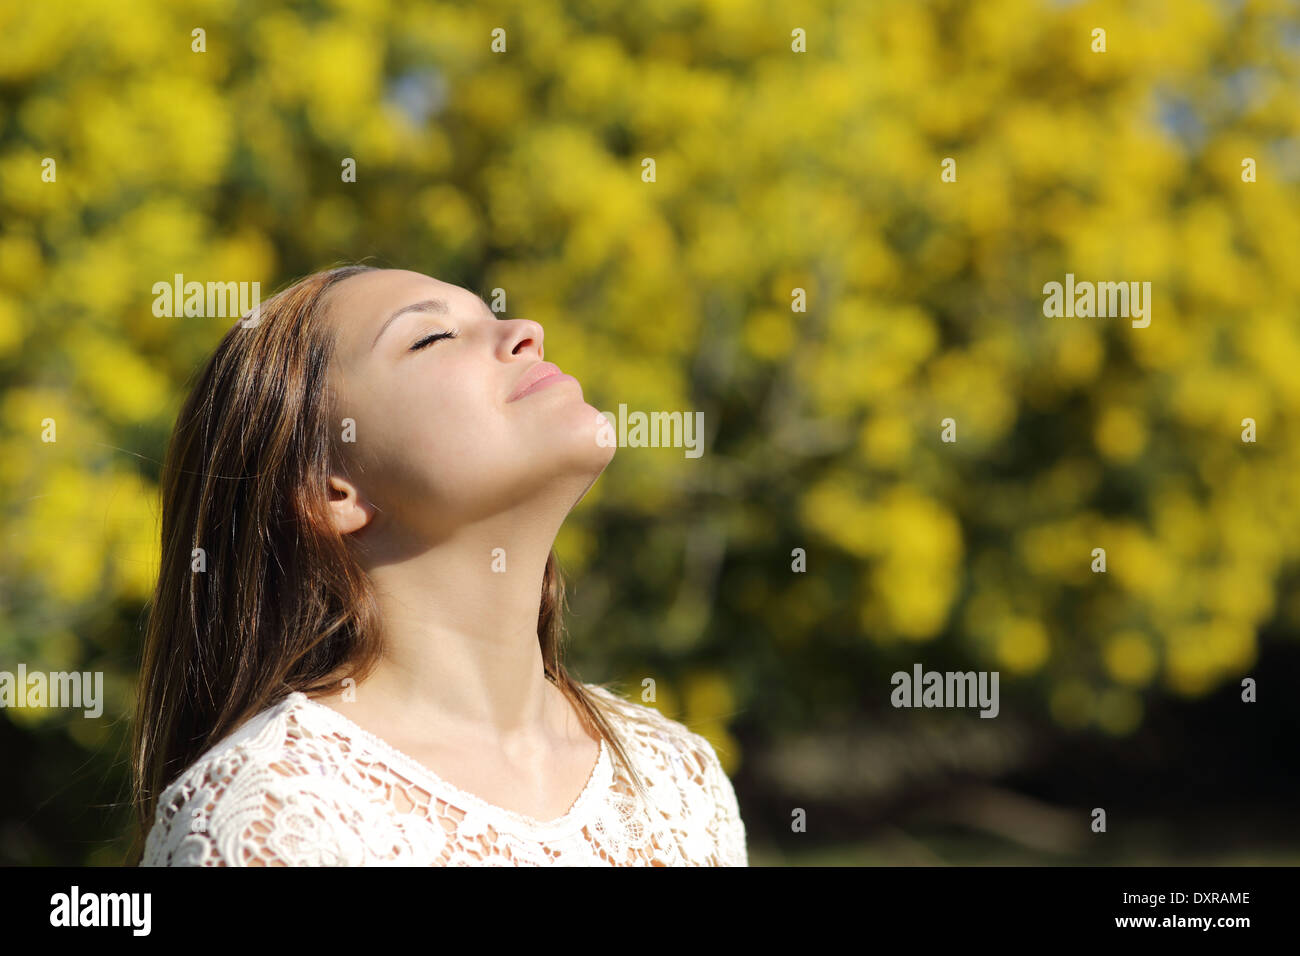 Donna respirazione profonda in primavera o in estate con uno sfondo giallo Foto Stock